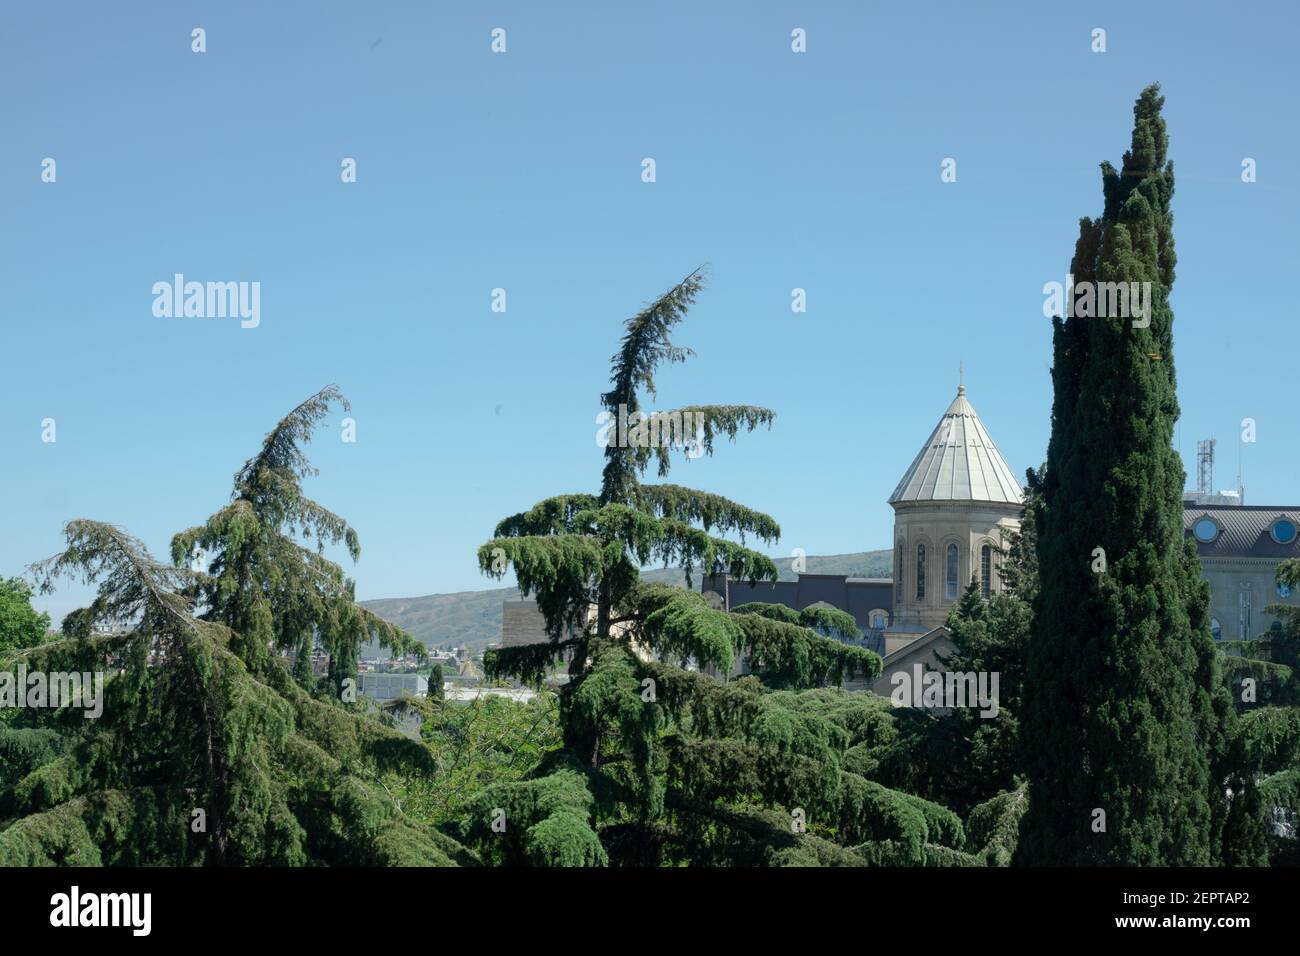 Paysage à Tbilissi, en Géorgie avec des arbres conifères à feuilles persistantes comprenant des cyprès, des spruces et le dôme de l'église en une journée ensoleillée d'été. Banque D'Images